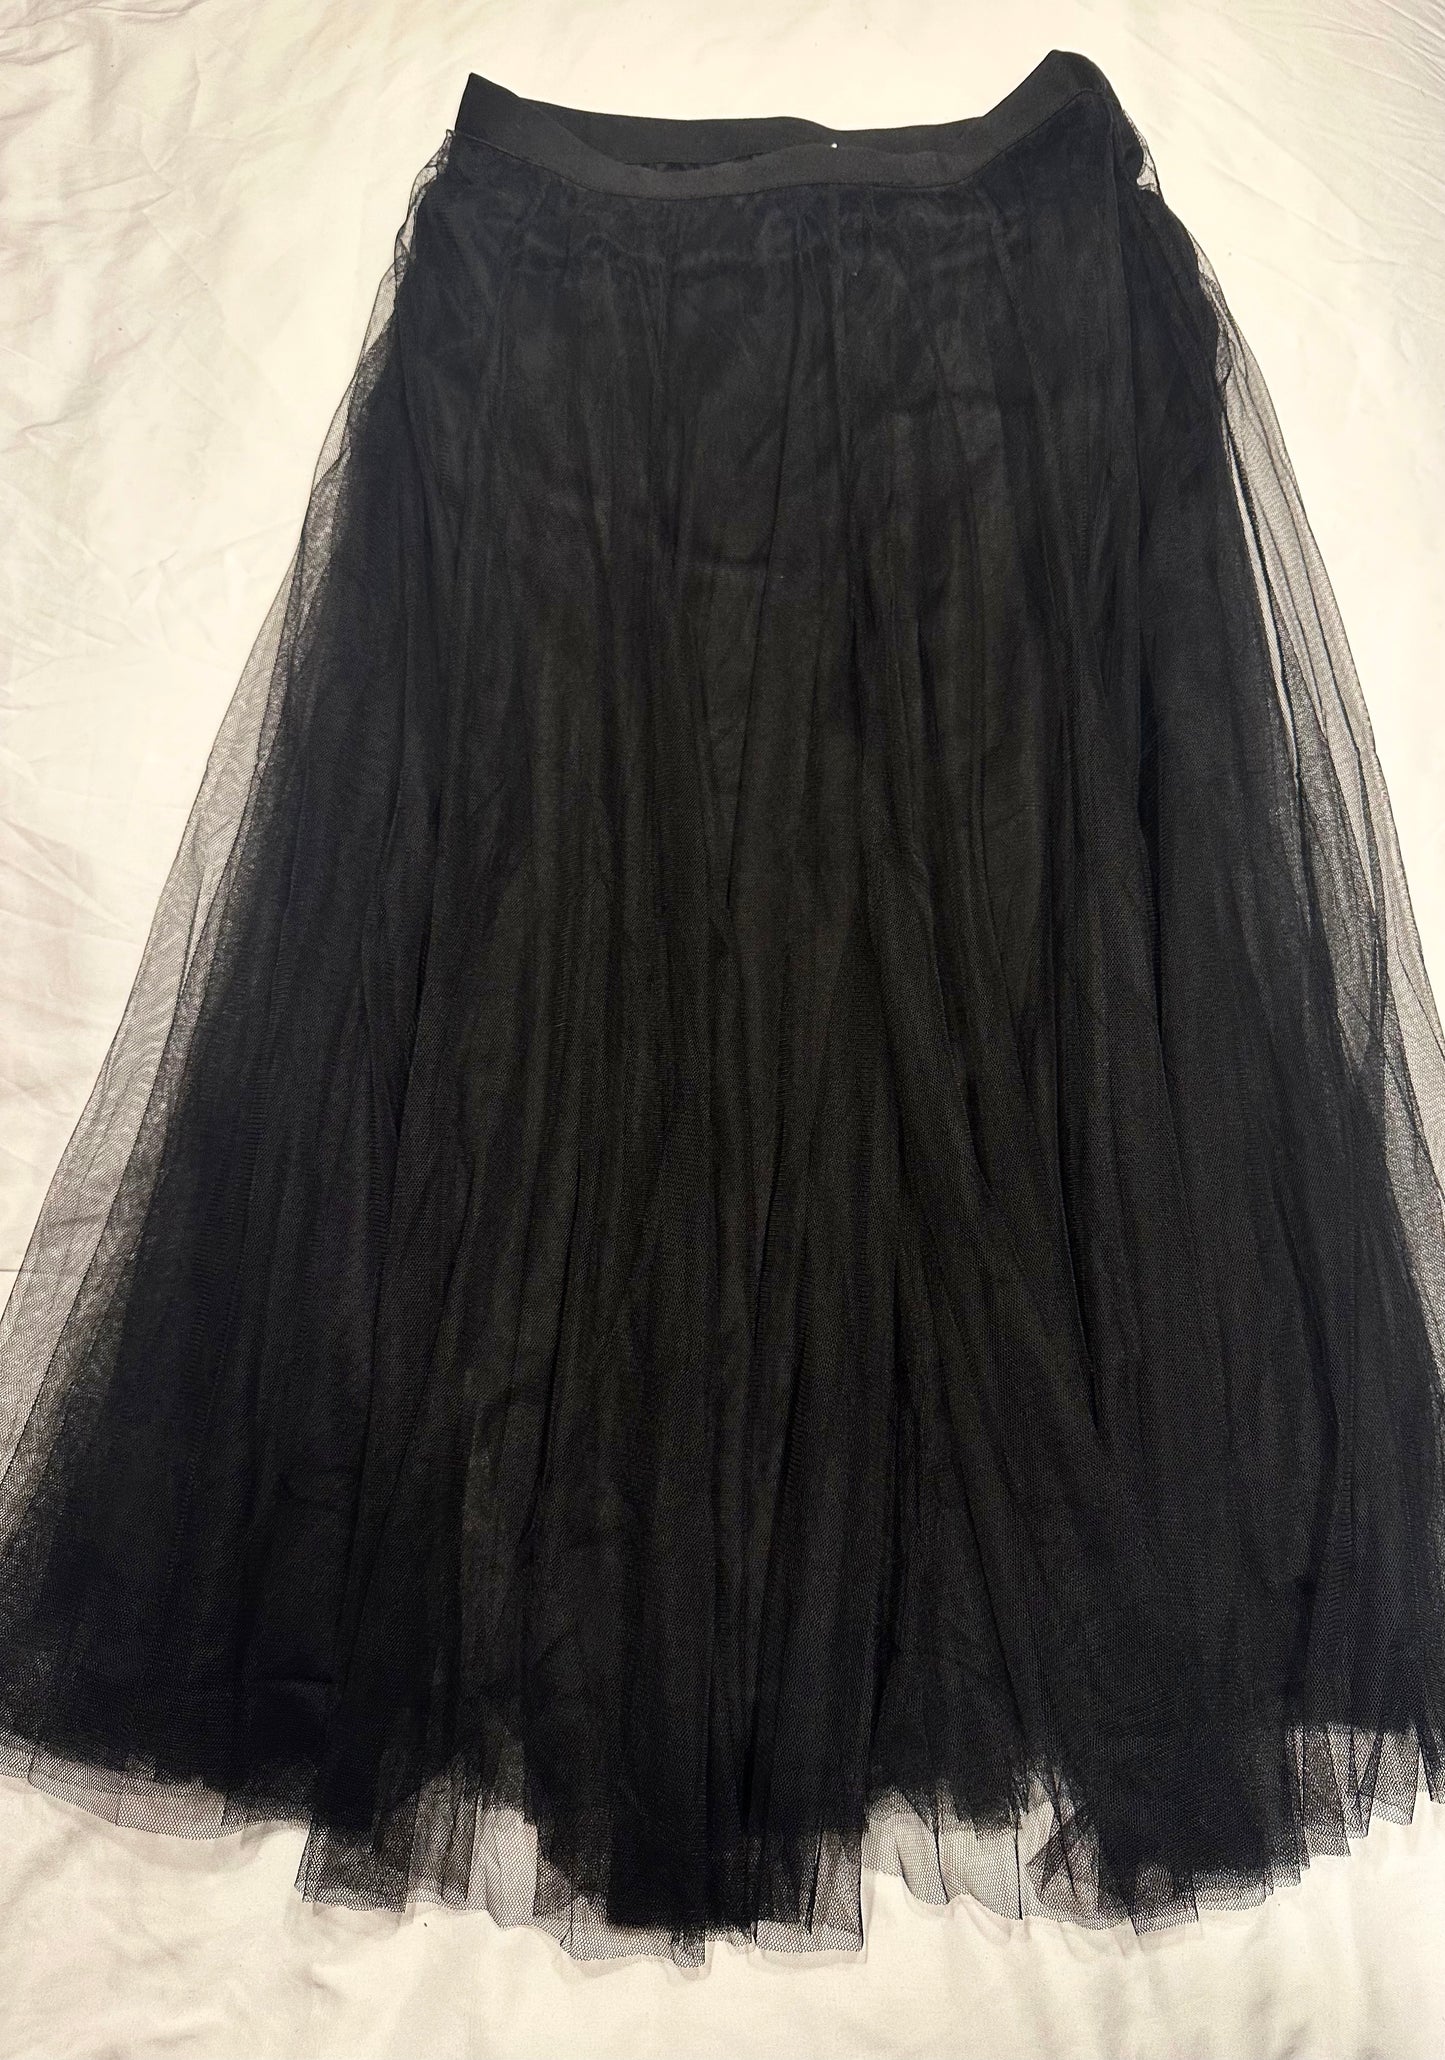 NWOT Women’s Black Tulle Skirt- size L/XL